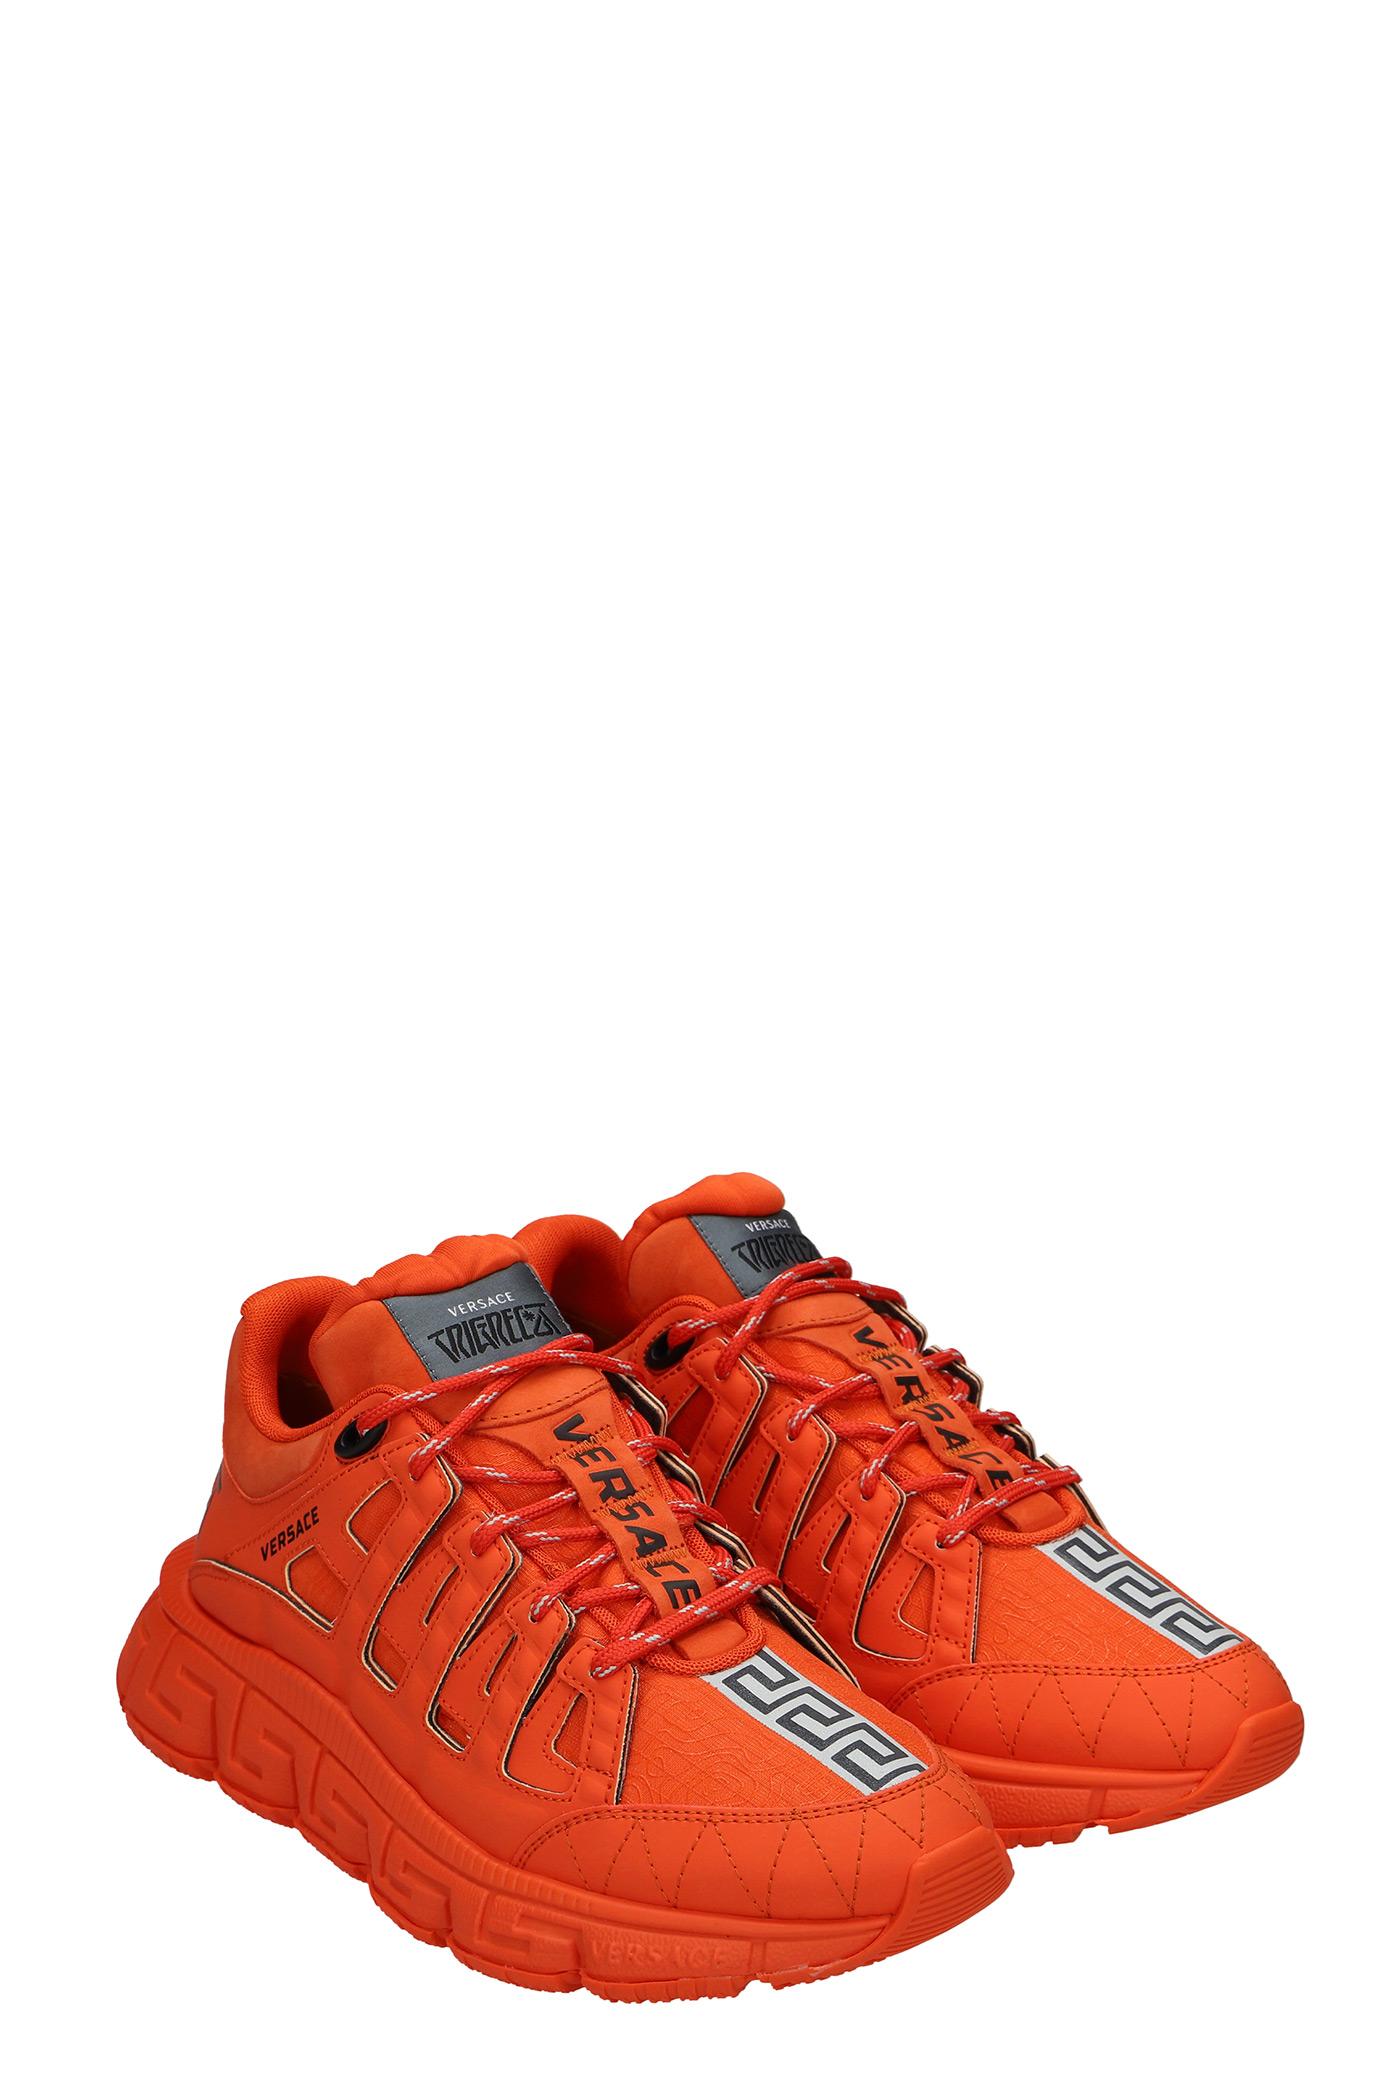 Versace Trigreca Sneakers In Orange Synthetic Fibers for Men | Lyst